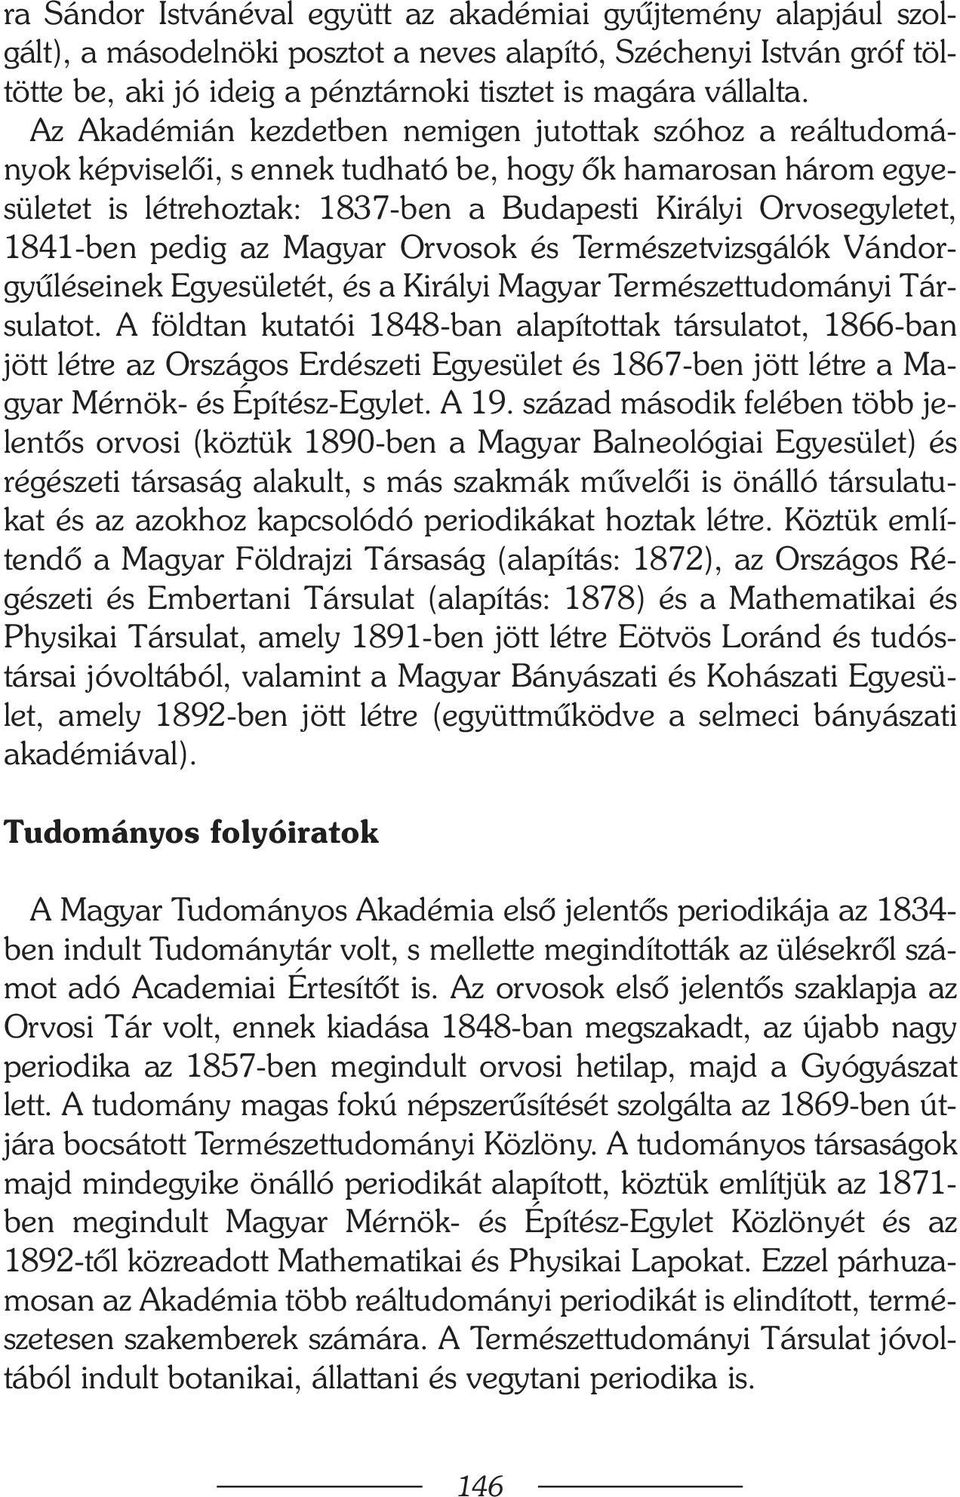 1841-ben pedig az Magyar Orvosok és Természetvizsgálók Vándorgyûléseinek Egyesületét, és a Királyi Magyar Természettudományi Társulatot.